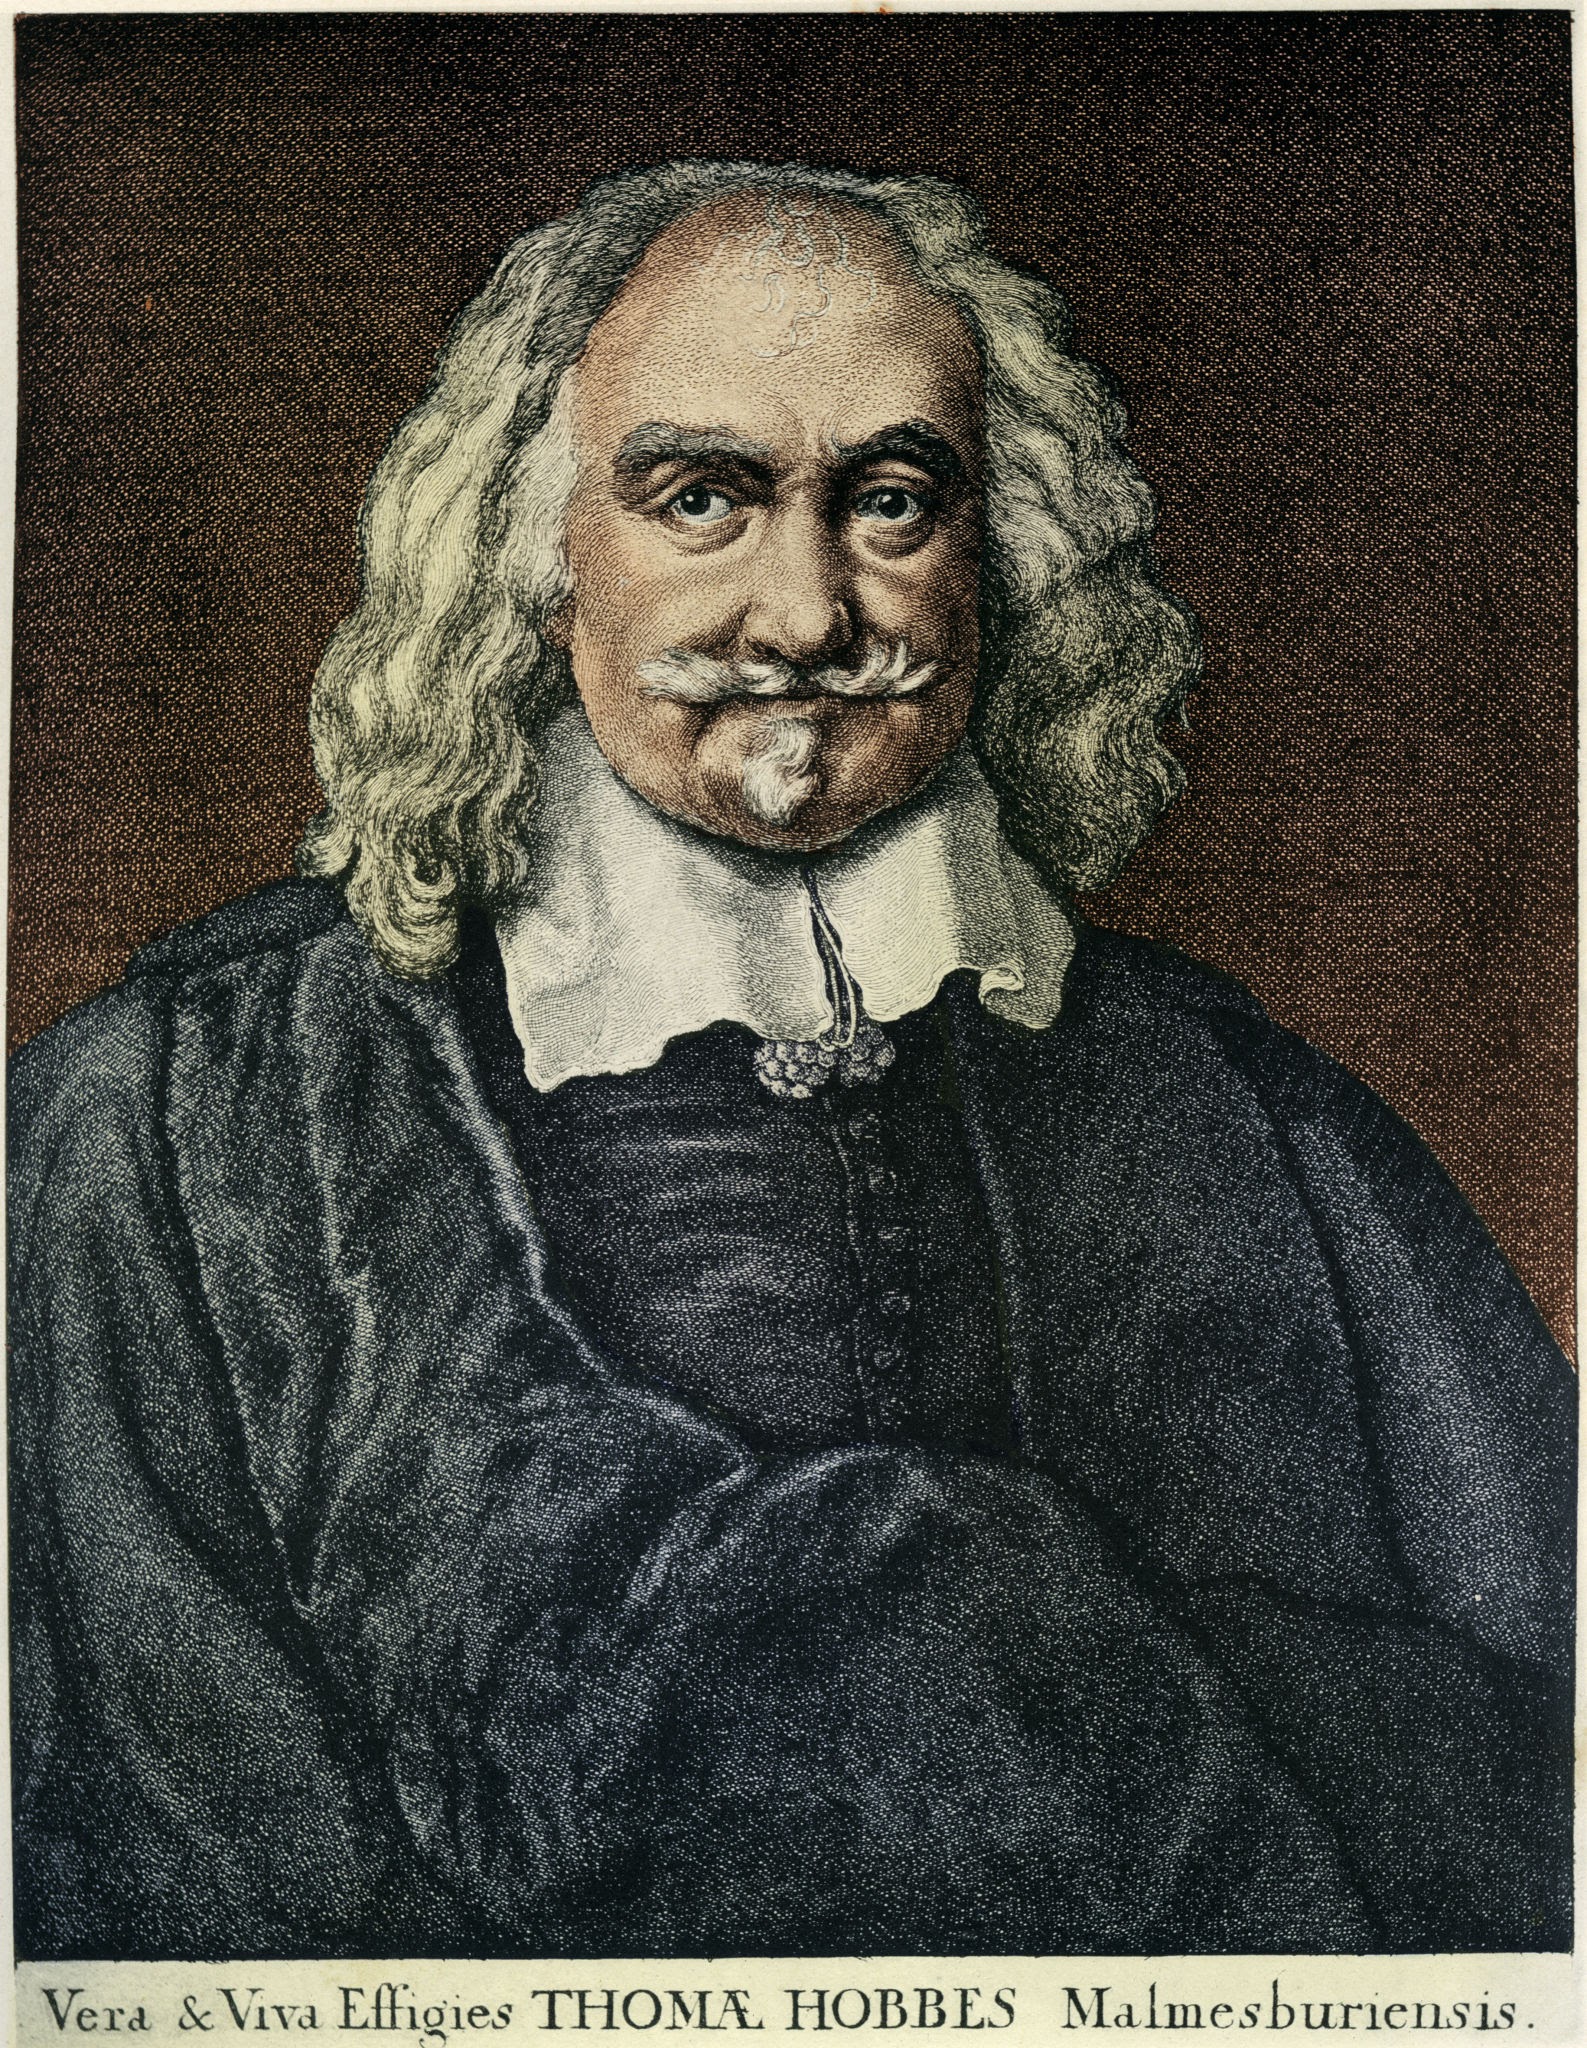 Thomas Hobbes: Homo homini lupus, El contrato social, y El Leviatán.